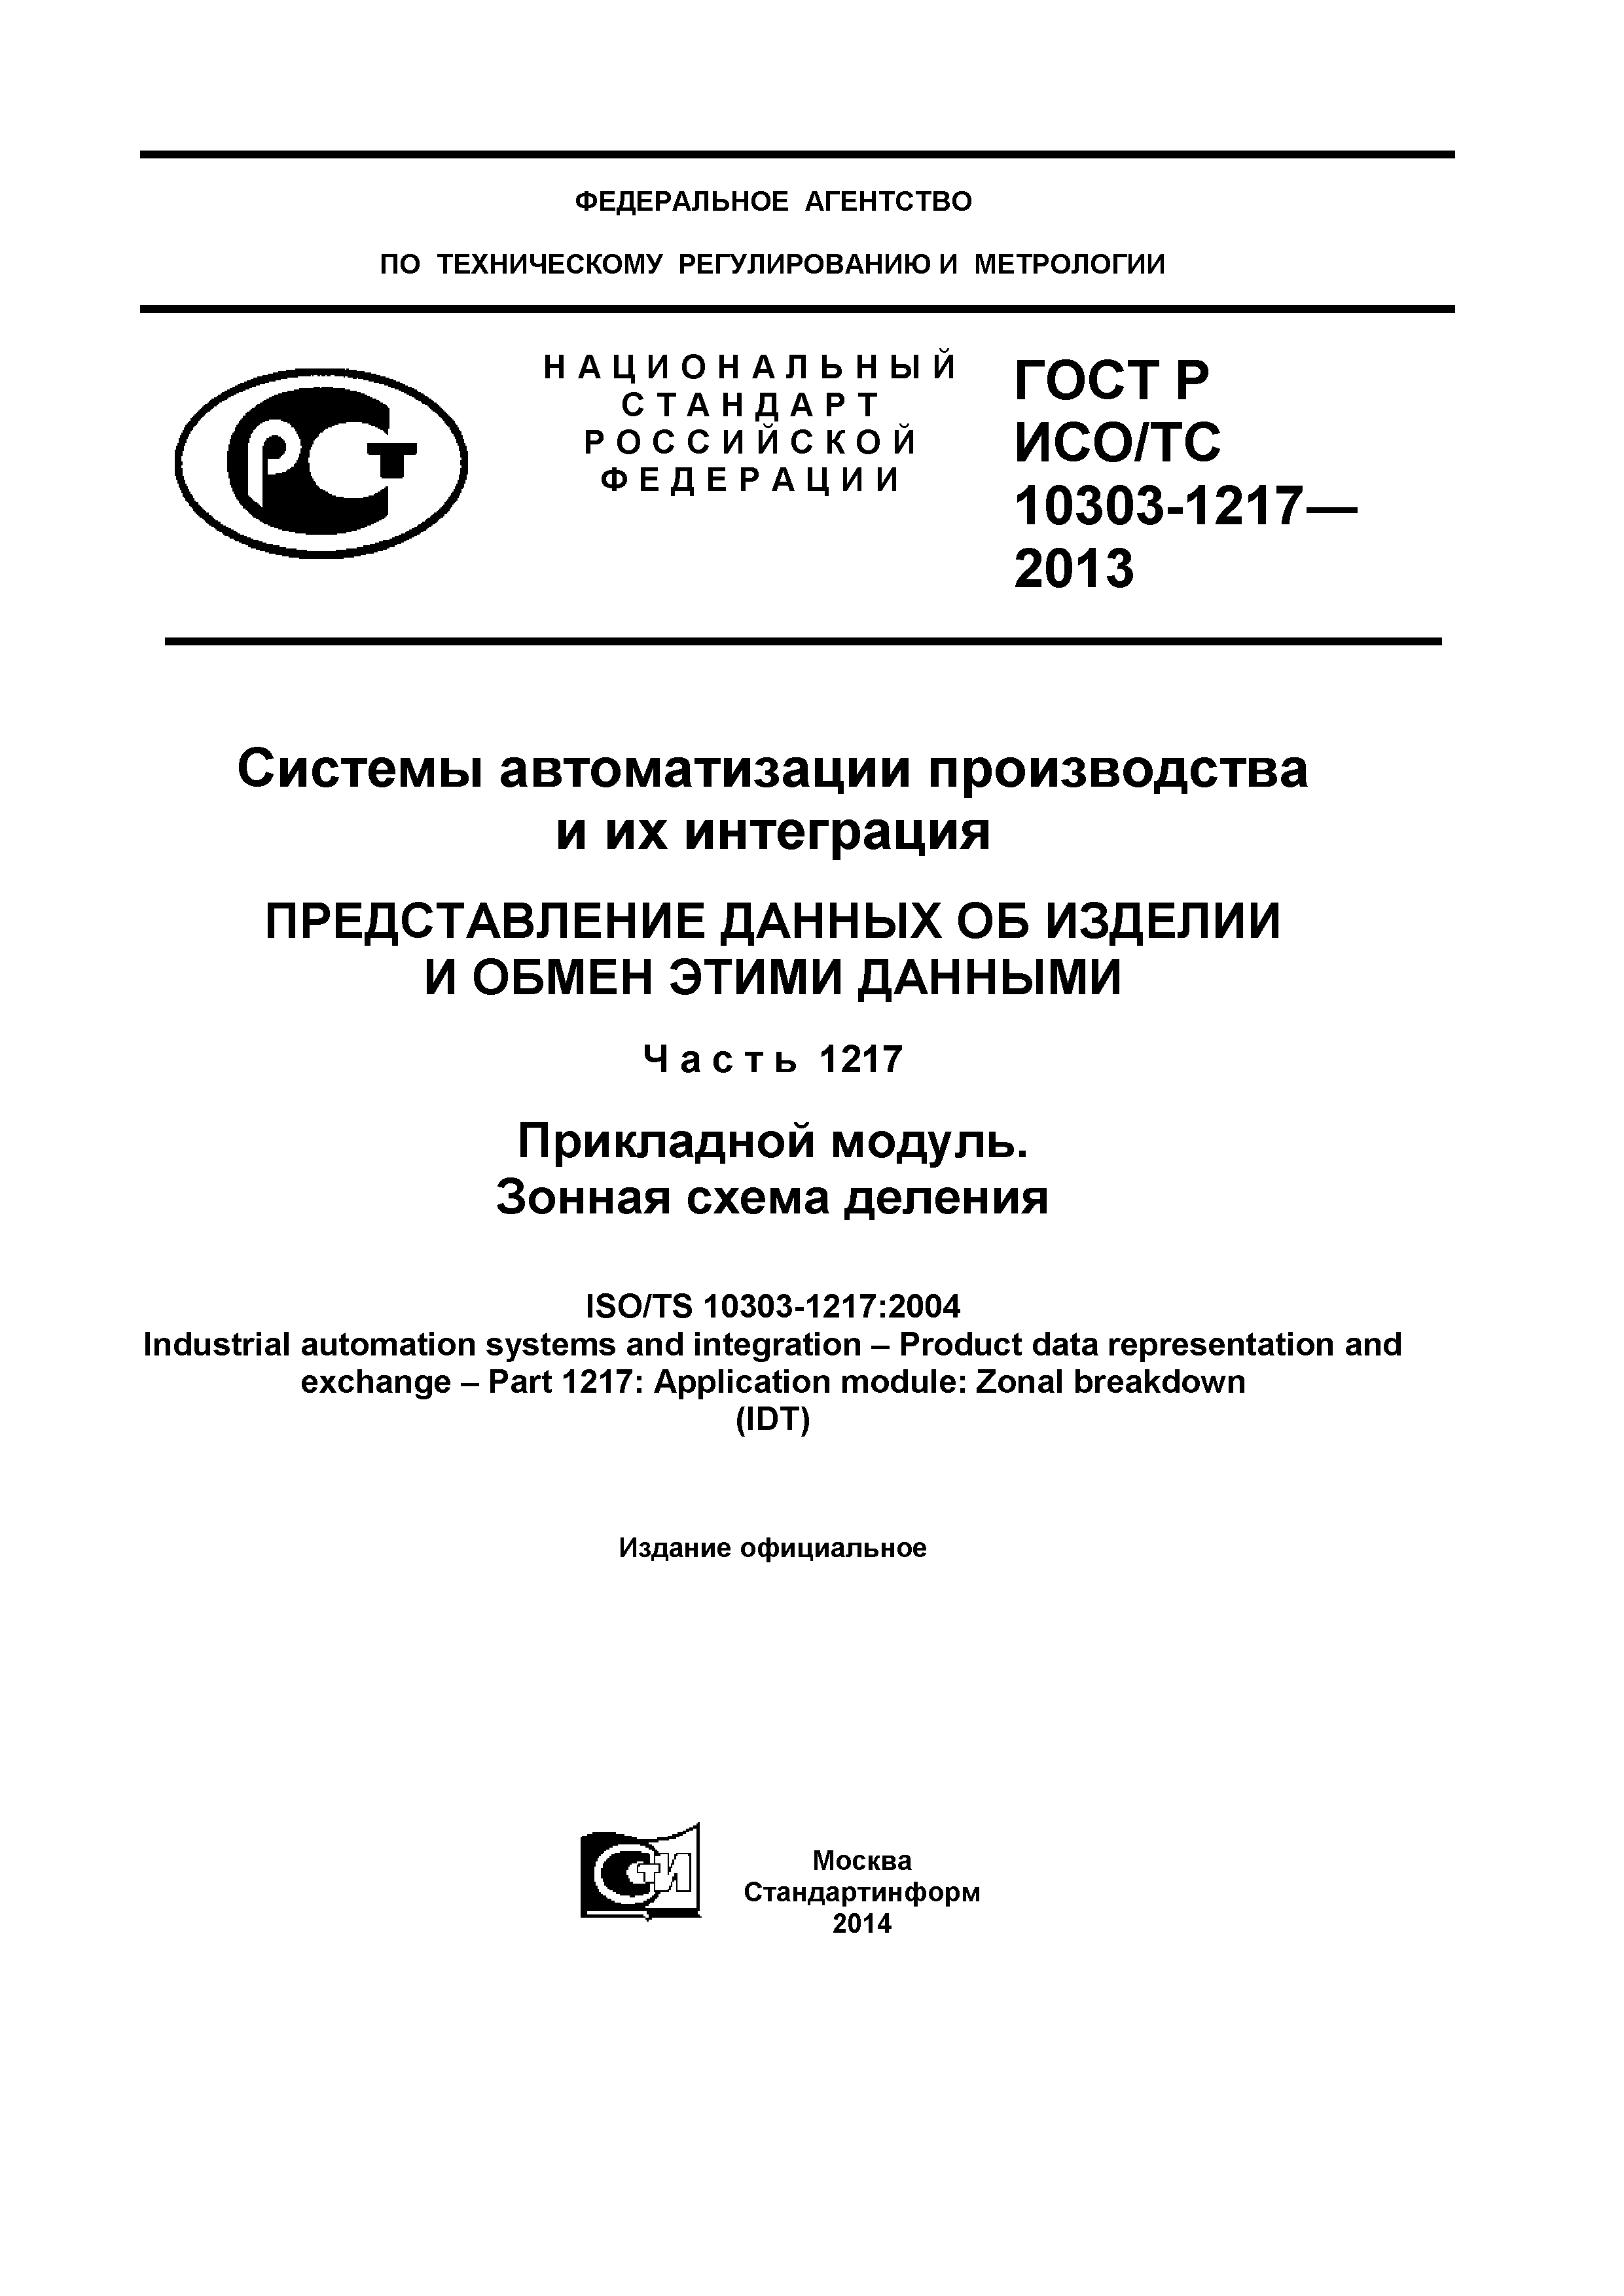 ГОСТ Р ИСО/ТС 10303-1217-2013